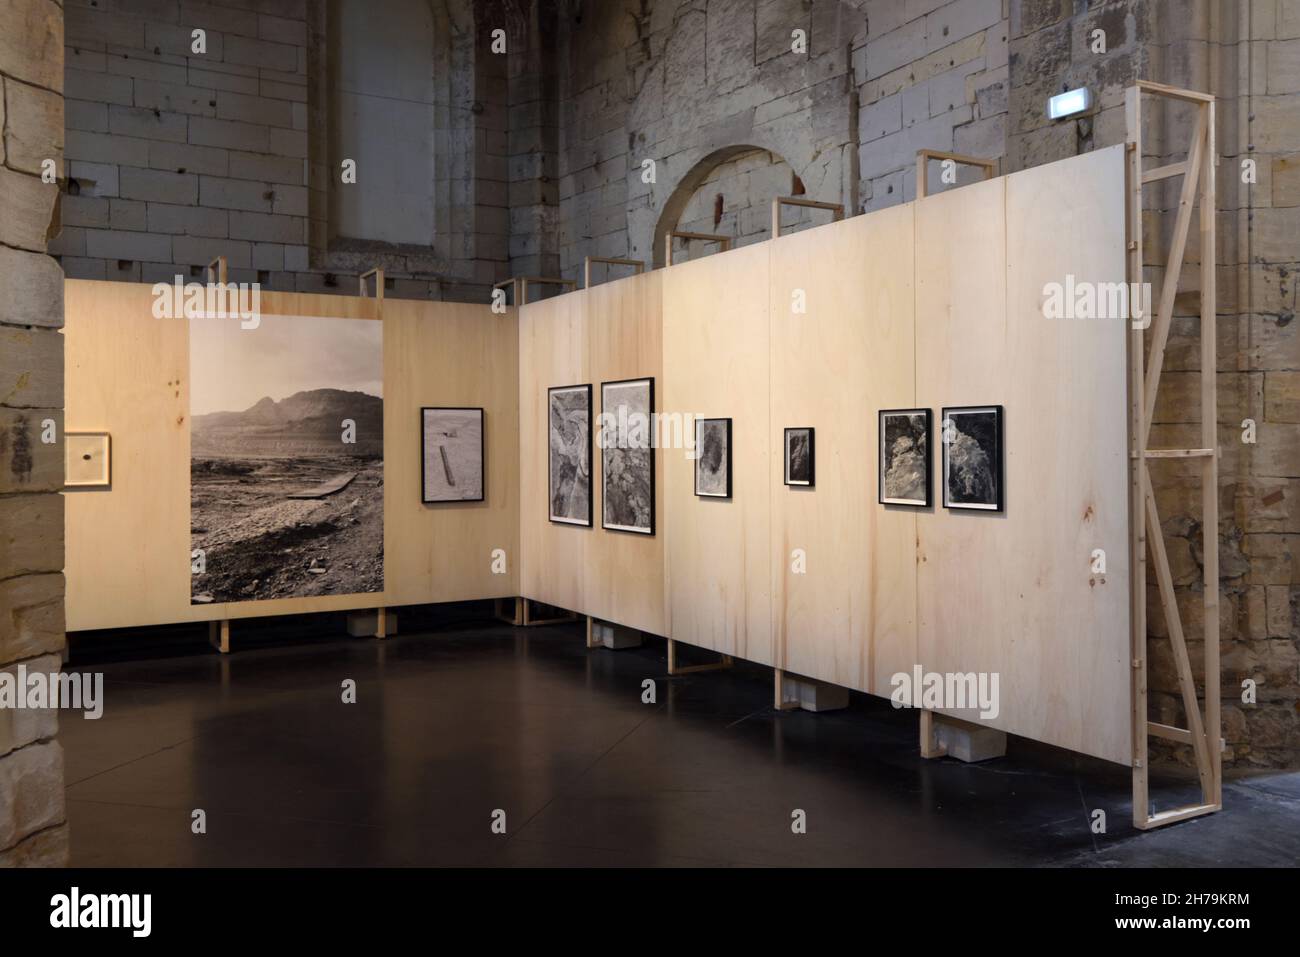 Exposition de photos ou exposition de photographies au Festival de photos annuel d'Arles Arles Provence France Banque D'Images